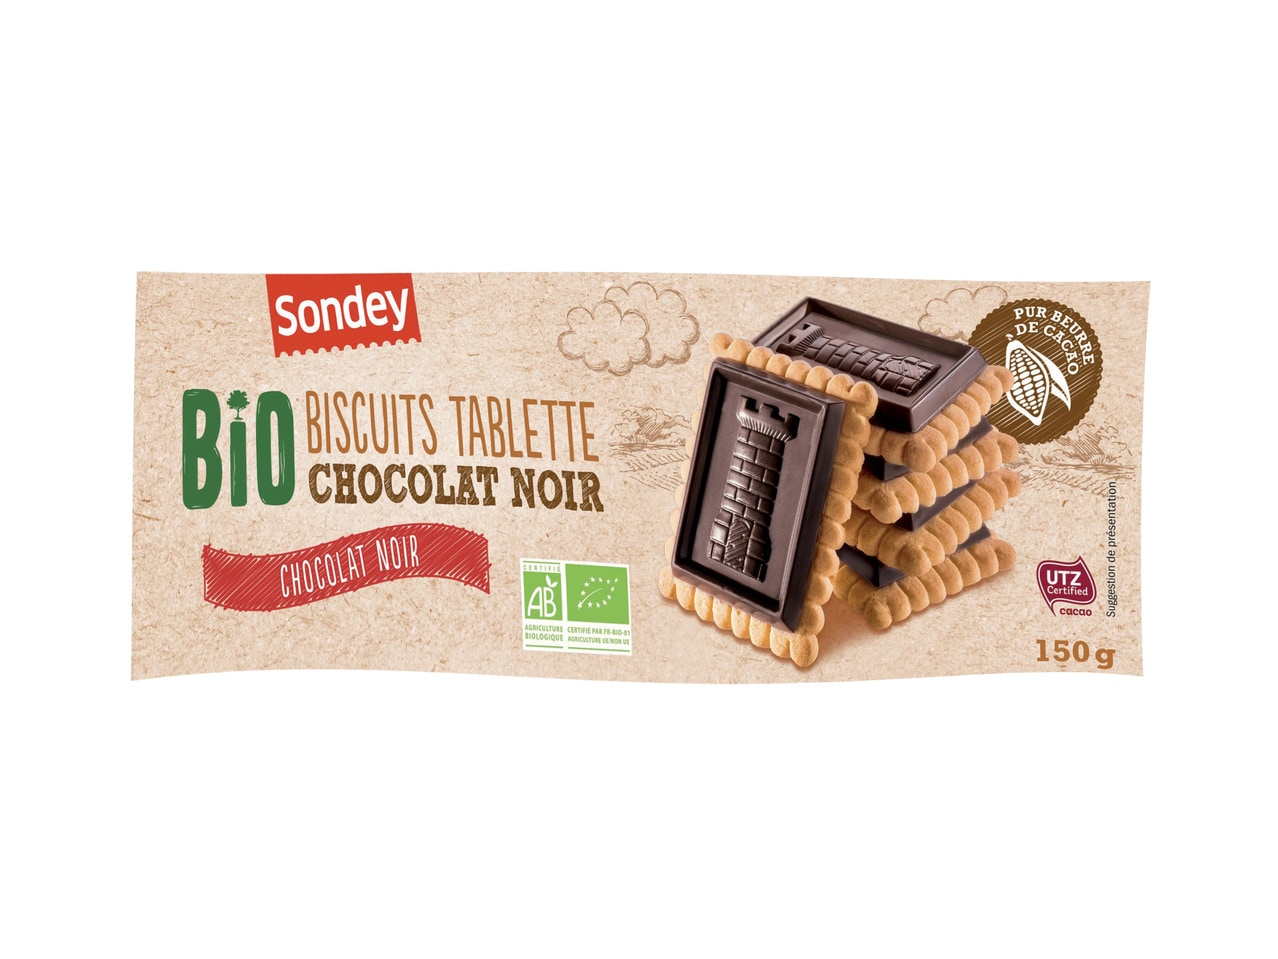 Biscuits tablette chocolat noir Bio1